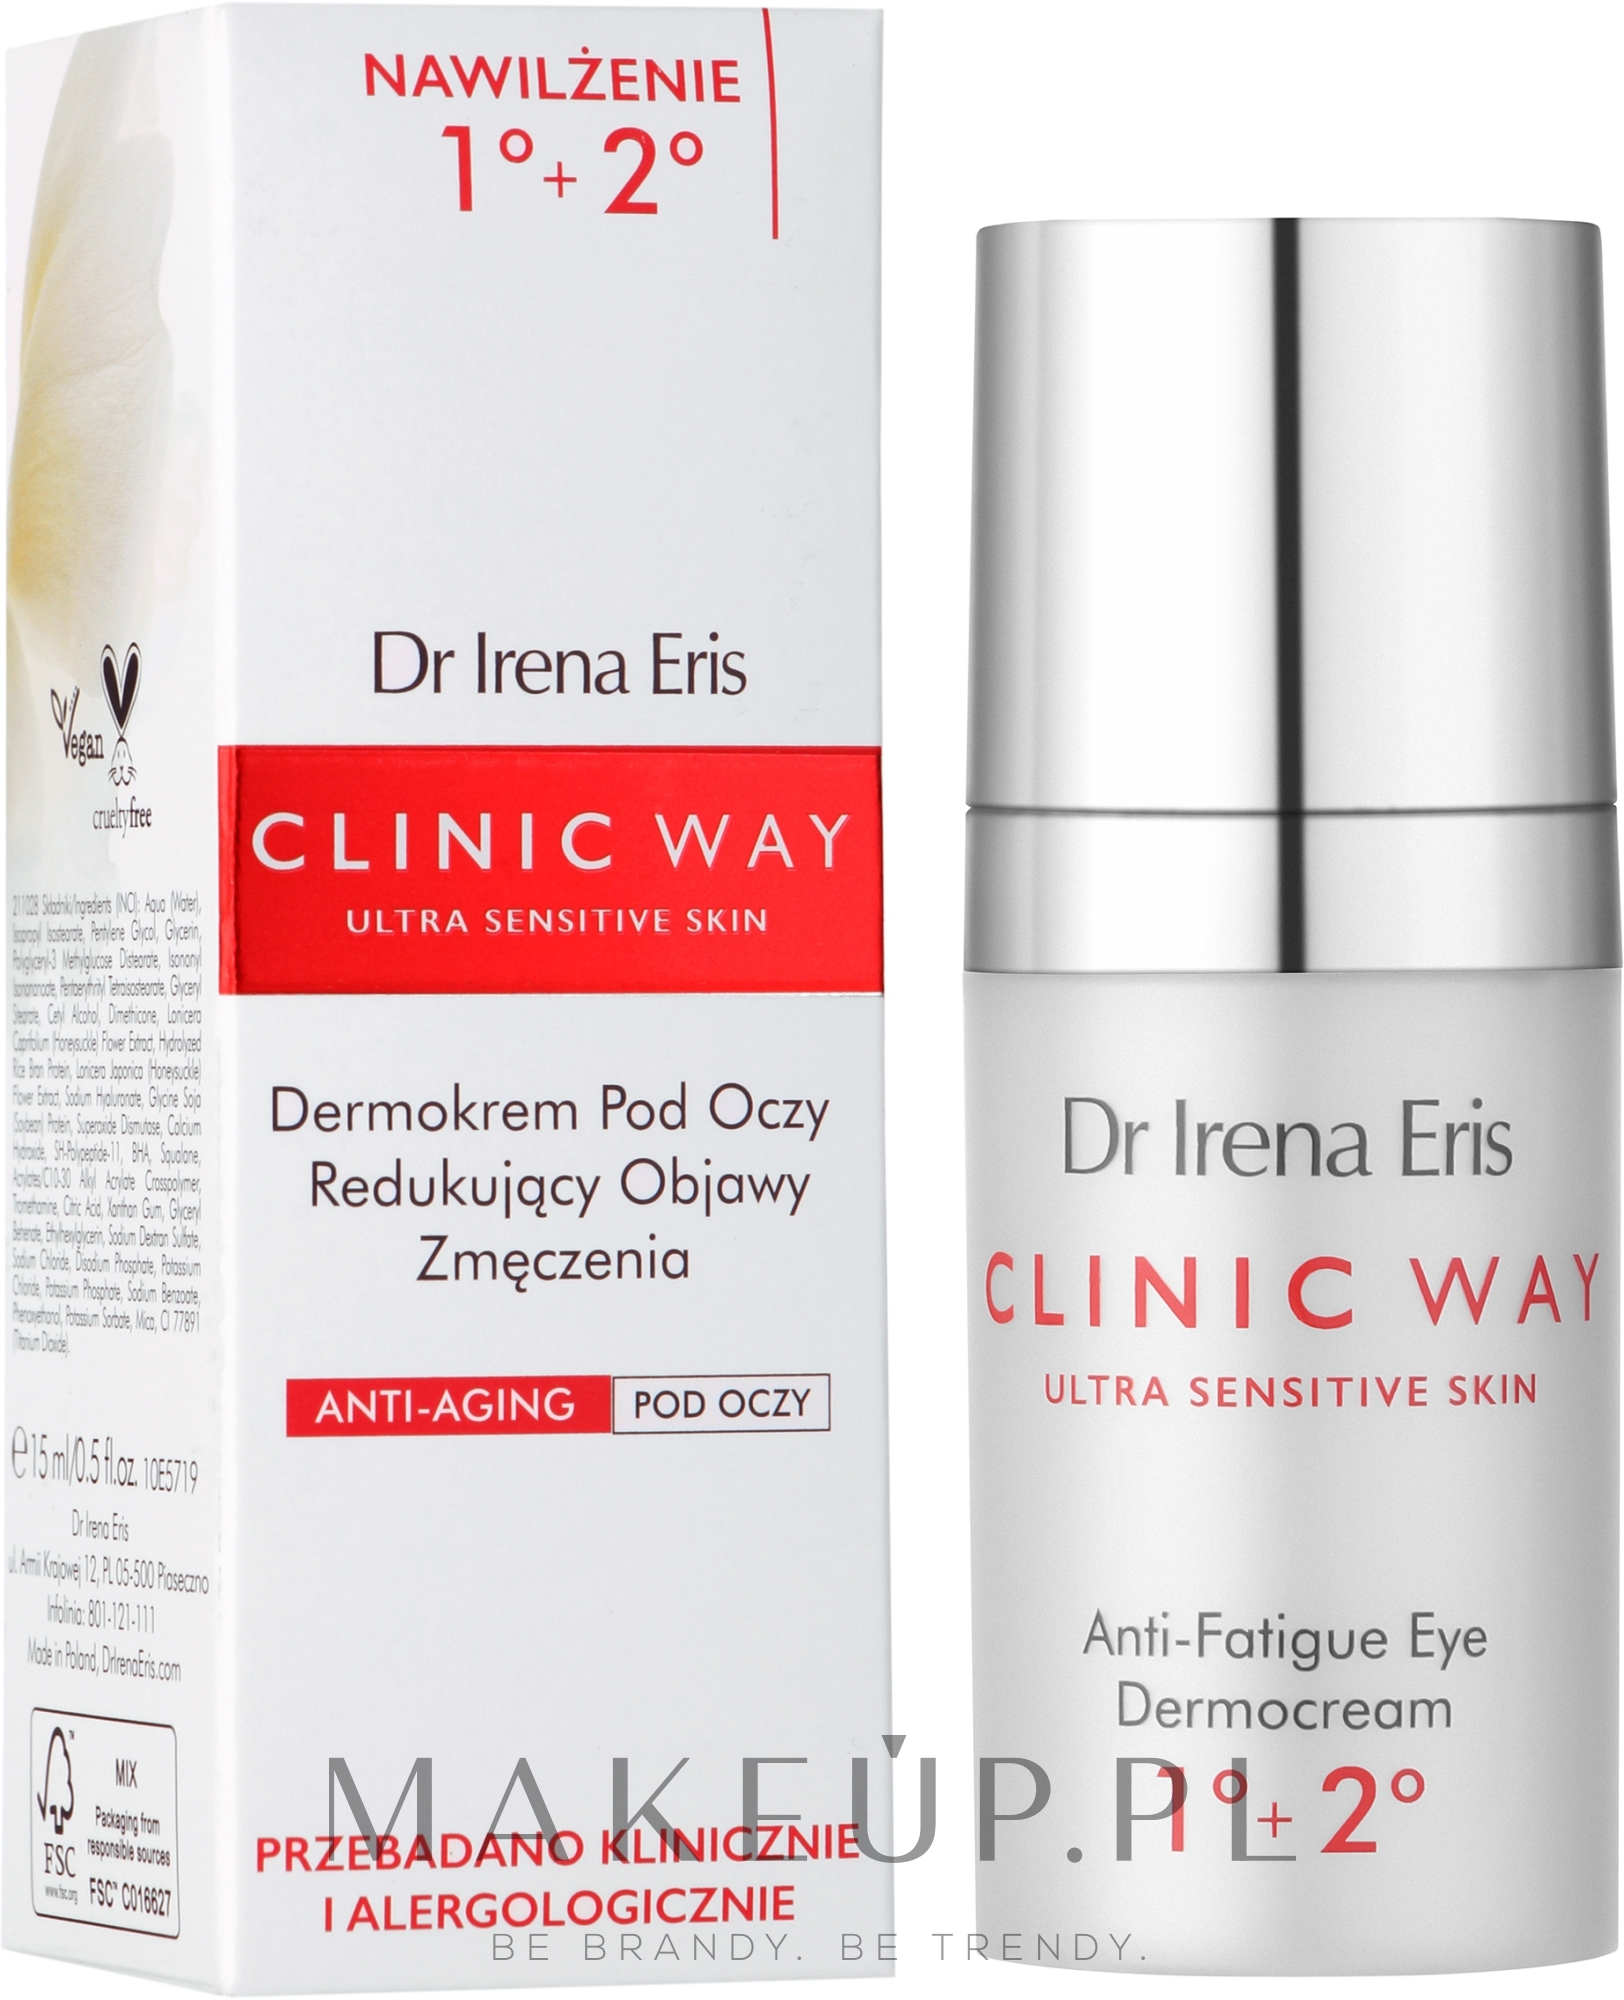 Krem pod oczy Hialuronowe wygładzenie - Dr Irena Eris Clinic Way 1°-2° Anti-Wrinkle Skin Care Around The Eyes — Zdjęcie 15 ml